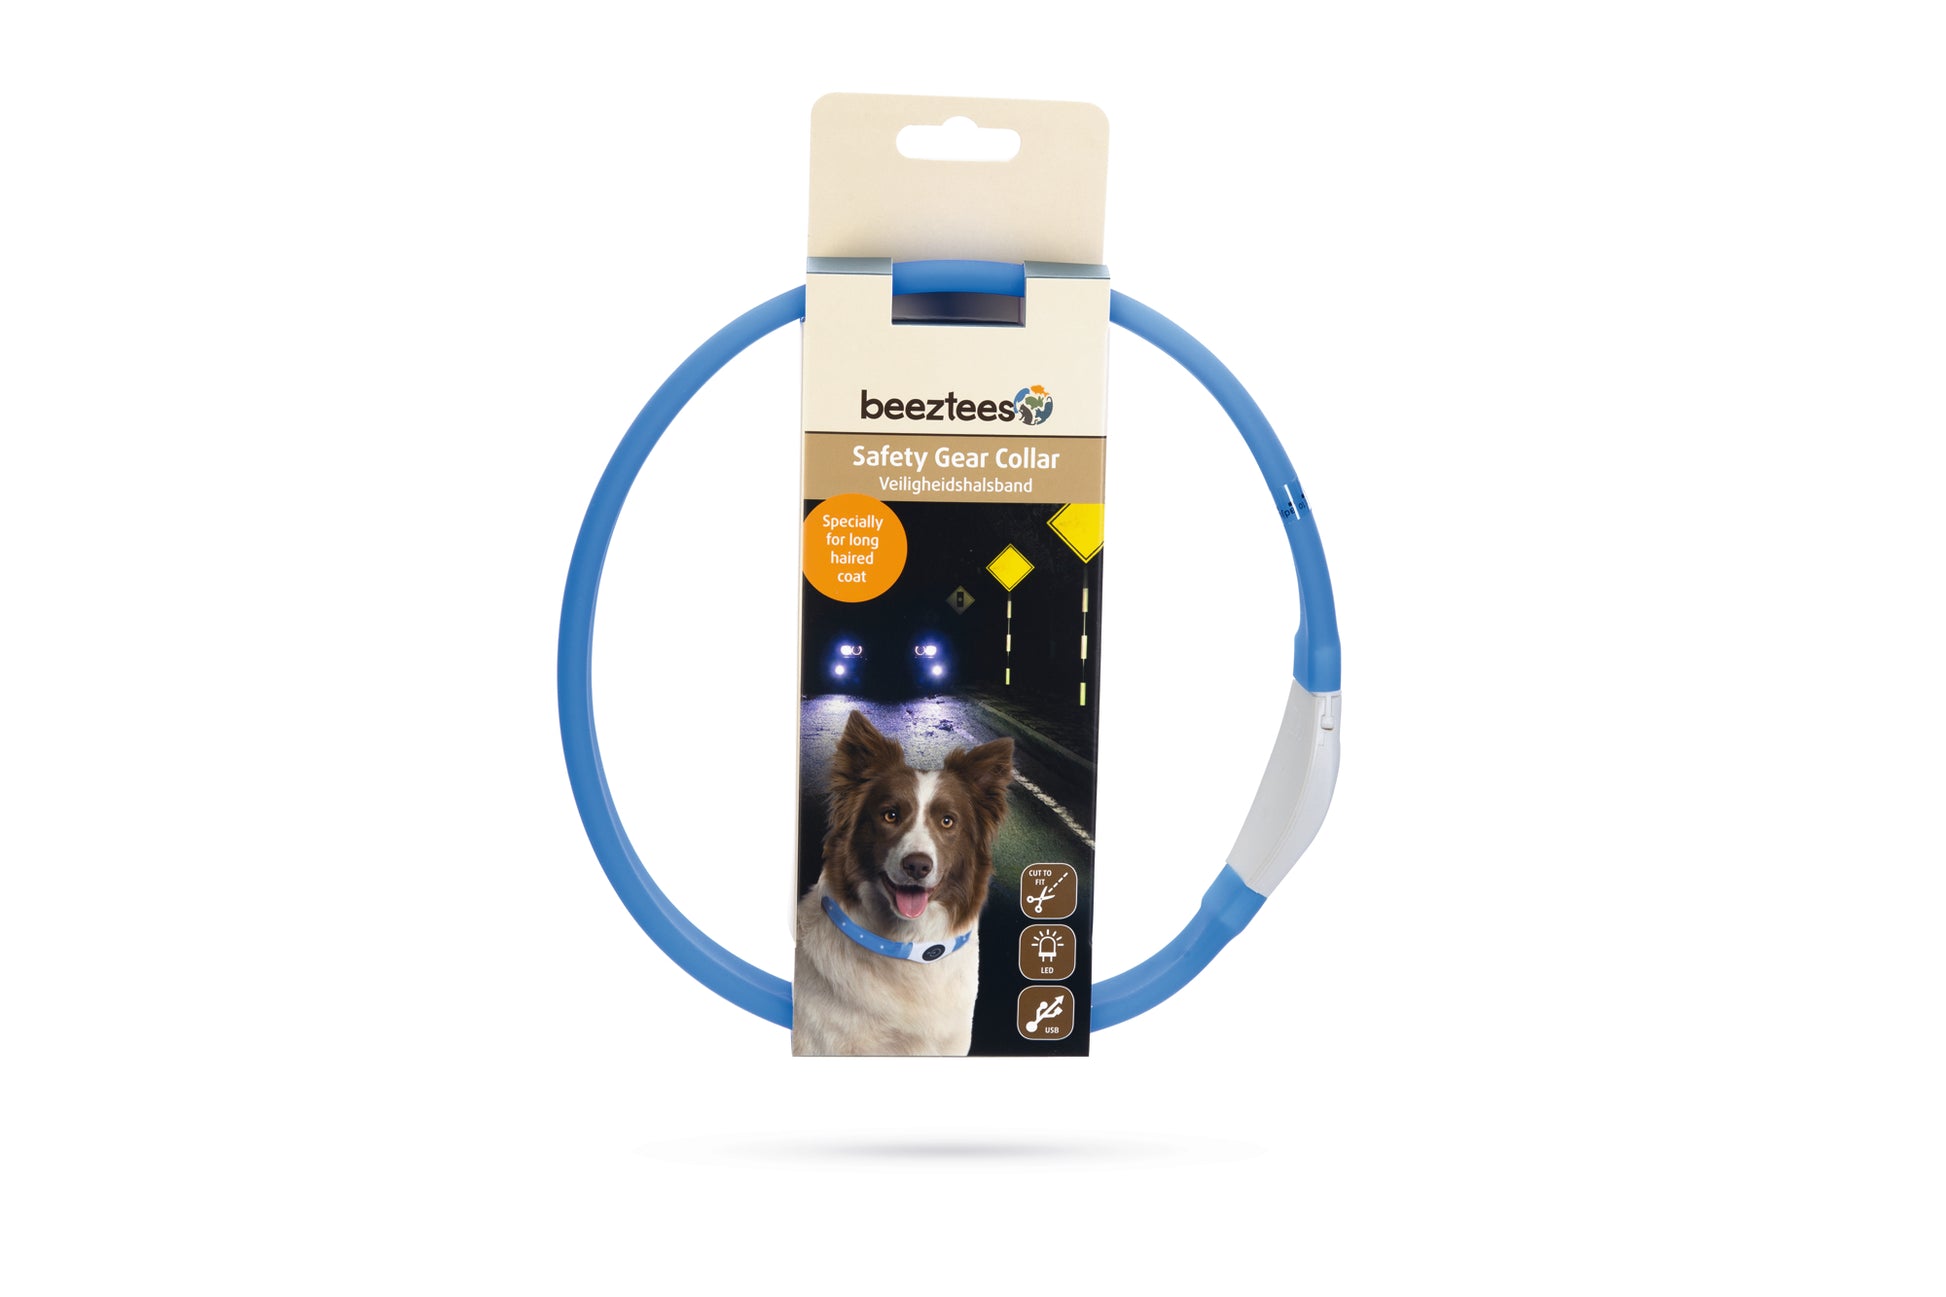 De Glowy Hondenhalsband is niet zomaar een halsband. Deze Safety Gear halsband is namelijk voorzien van verlichting en kan ook nog eens op maat worden geknipt. Het licht heeft maar liefst drie standen: 2 keer knipperend en 1 keer continue brandend. Met deze verlichting kan je ervoor zorgen dat jij en jouw hond goed zichtbaar zijn voor anderen. De halsband is regenbestendig en kan worden opgeladen met de bijgeleverde USB kabel. Geschikt voor langharige honden!